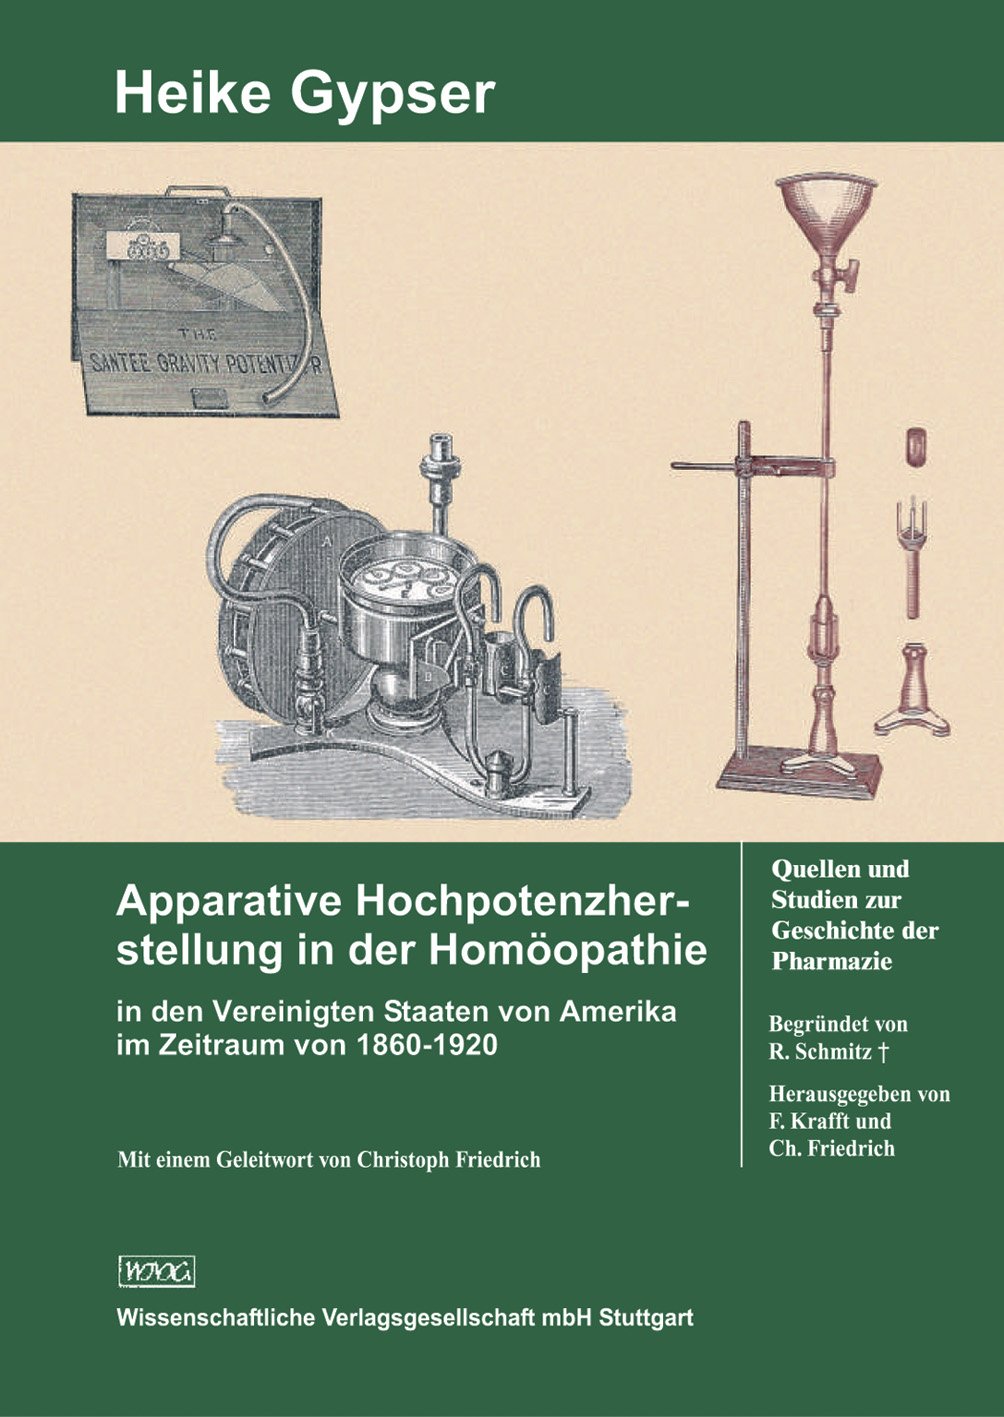 Apparative Hochpotenzherstellung in der Homöopathie
in den Vereinigten Staaten von Amerika im Zeitraum von 1860–1920